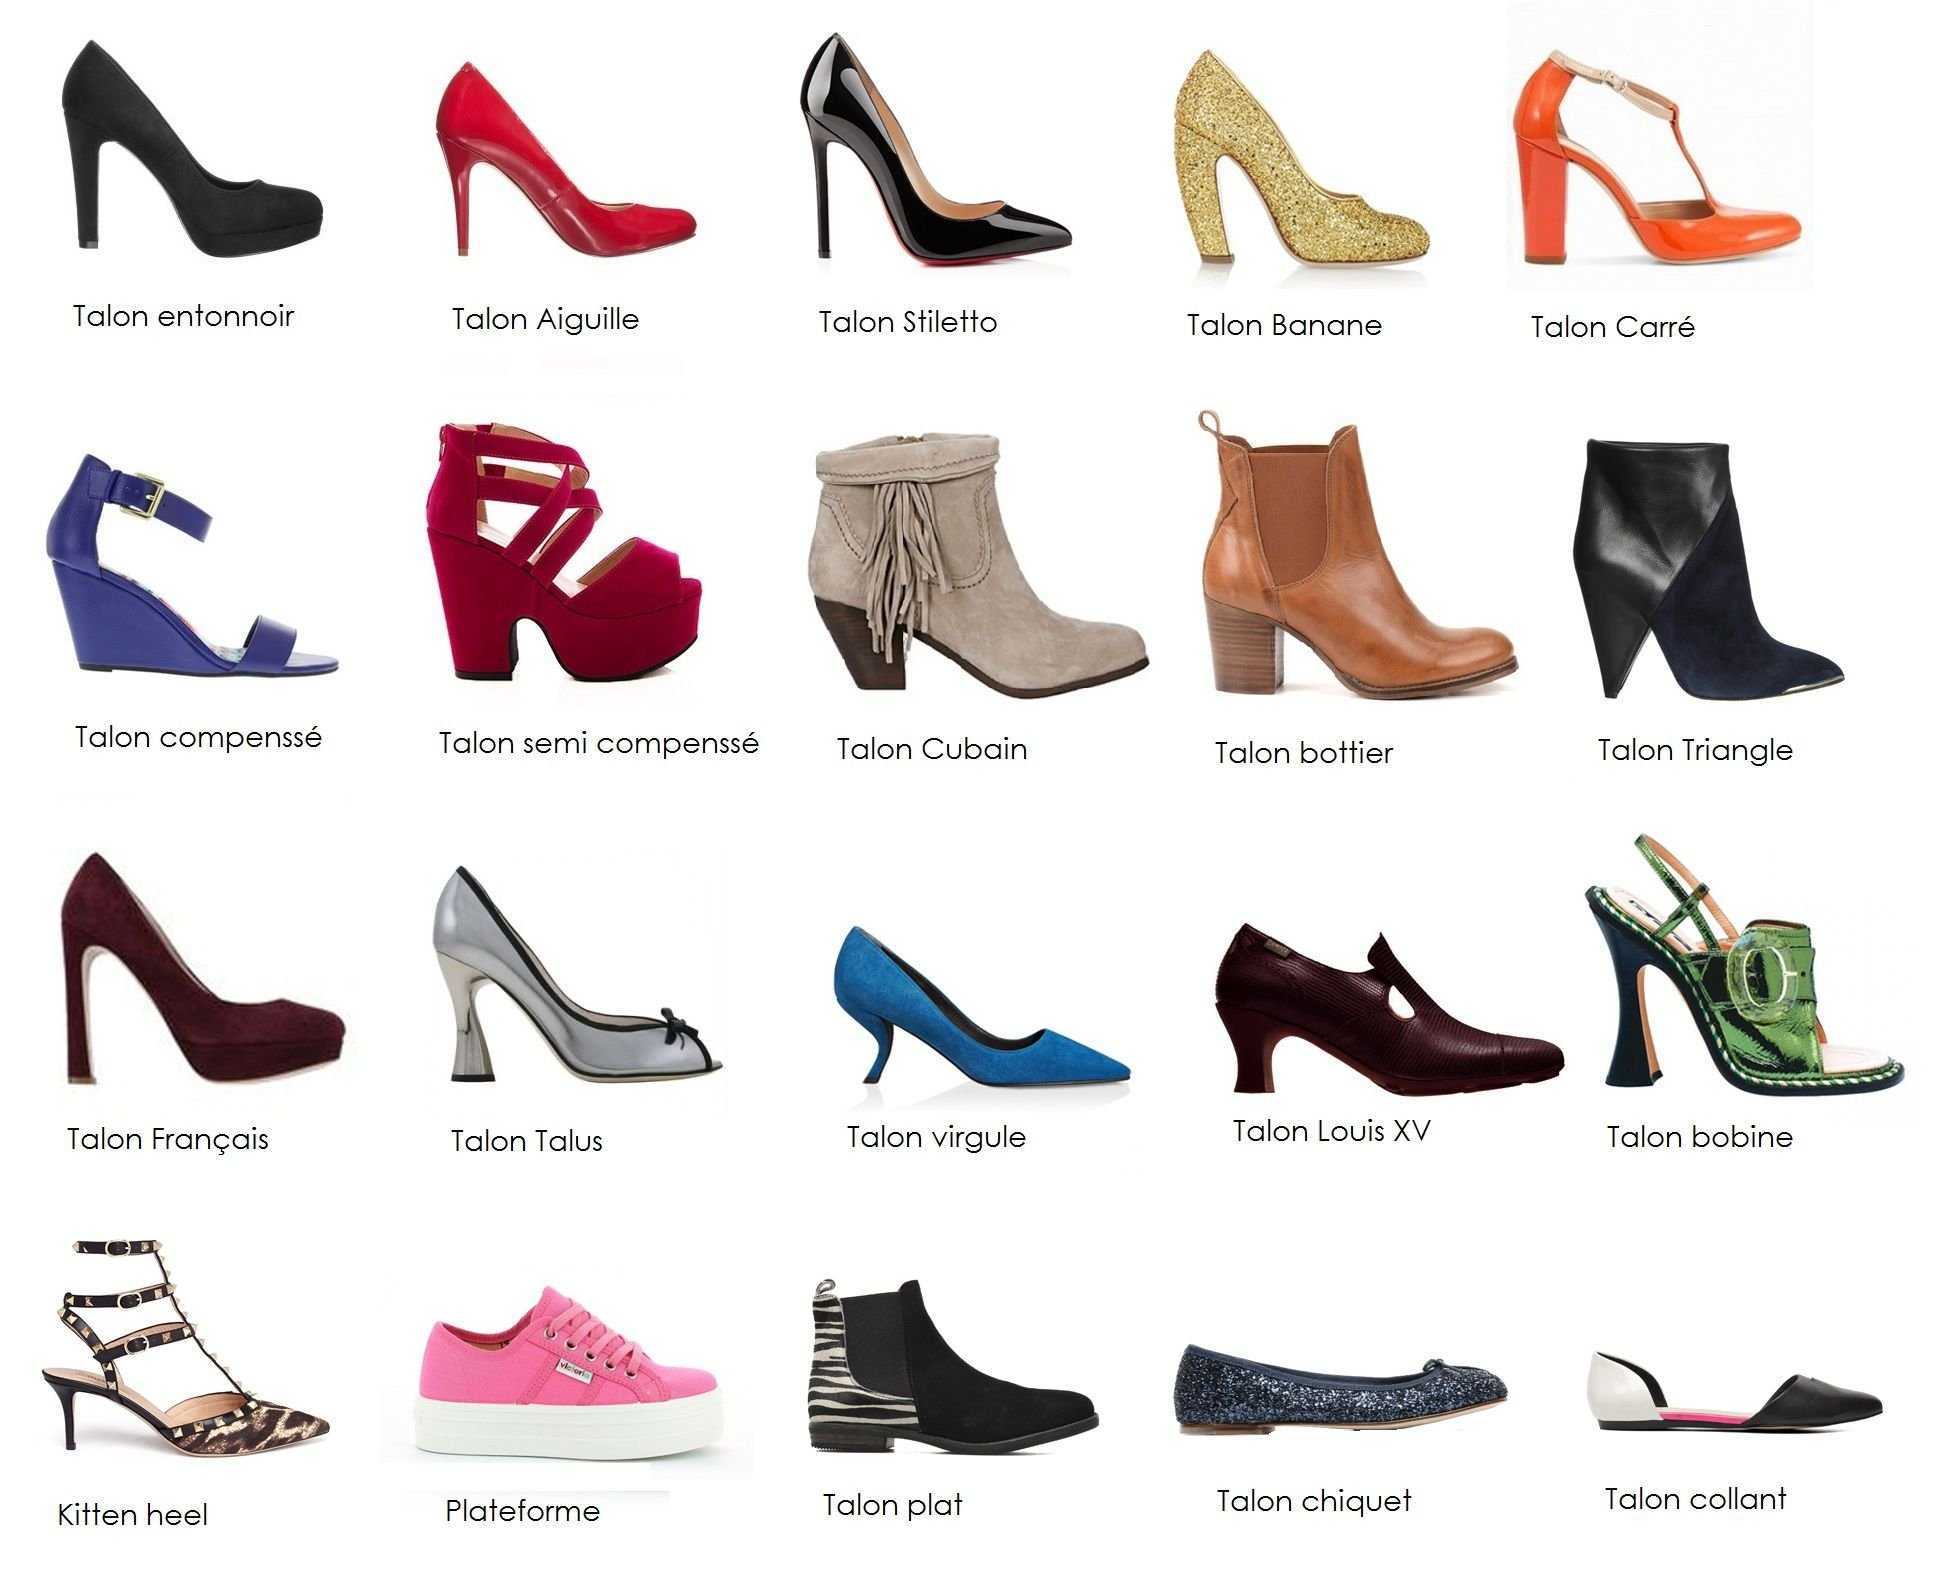 Как выбрать правильную обувь на лето? - блог напоправку